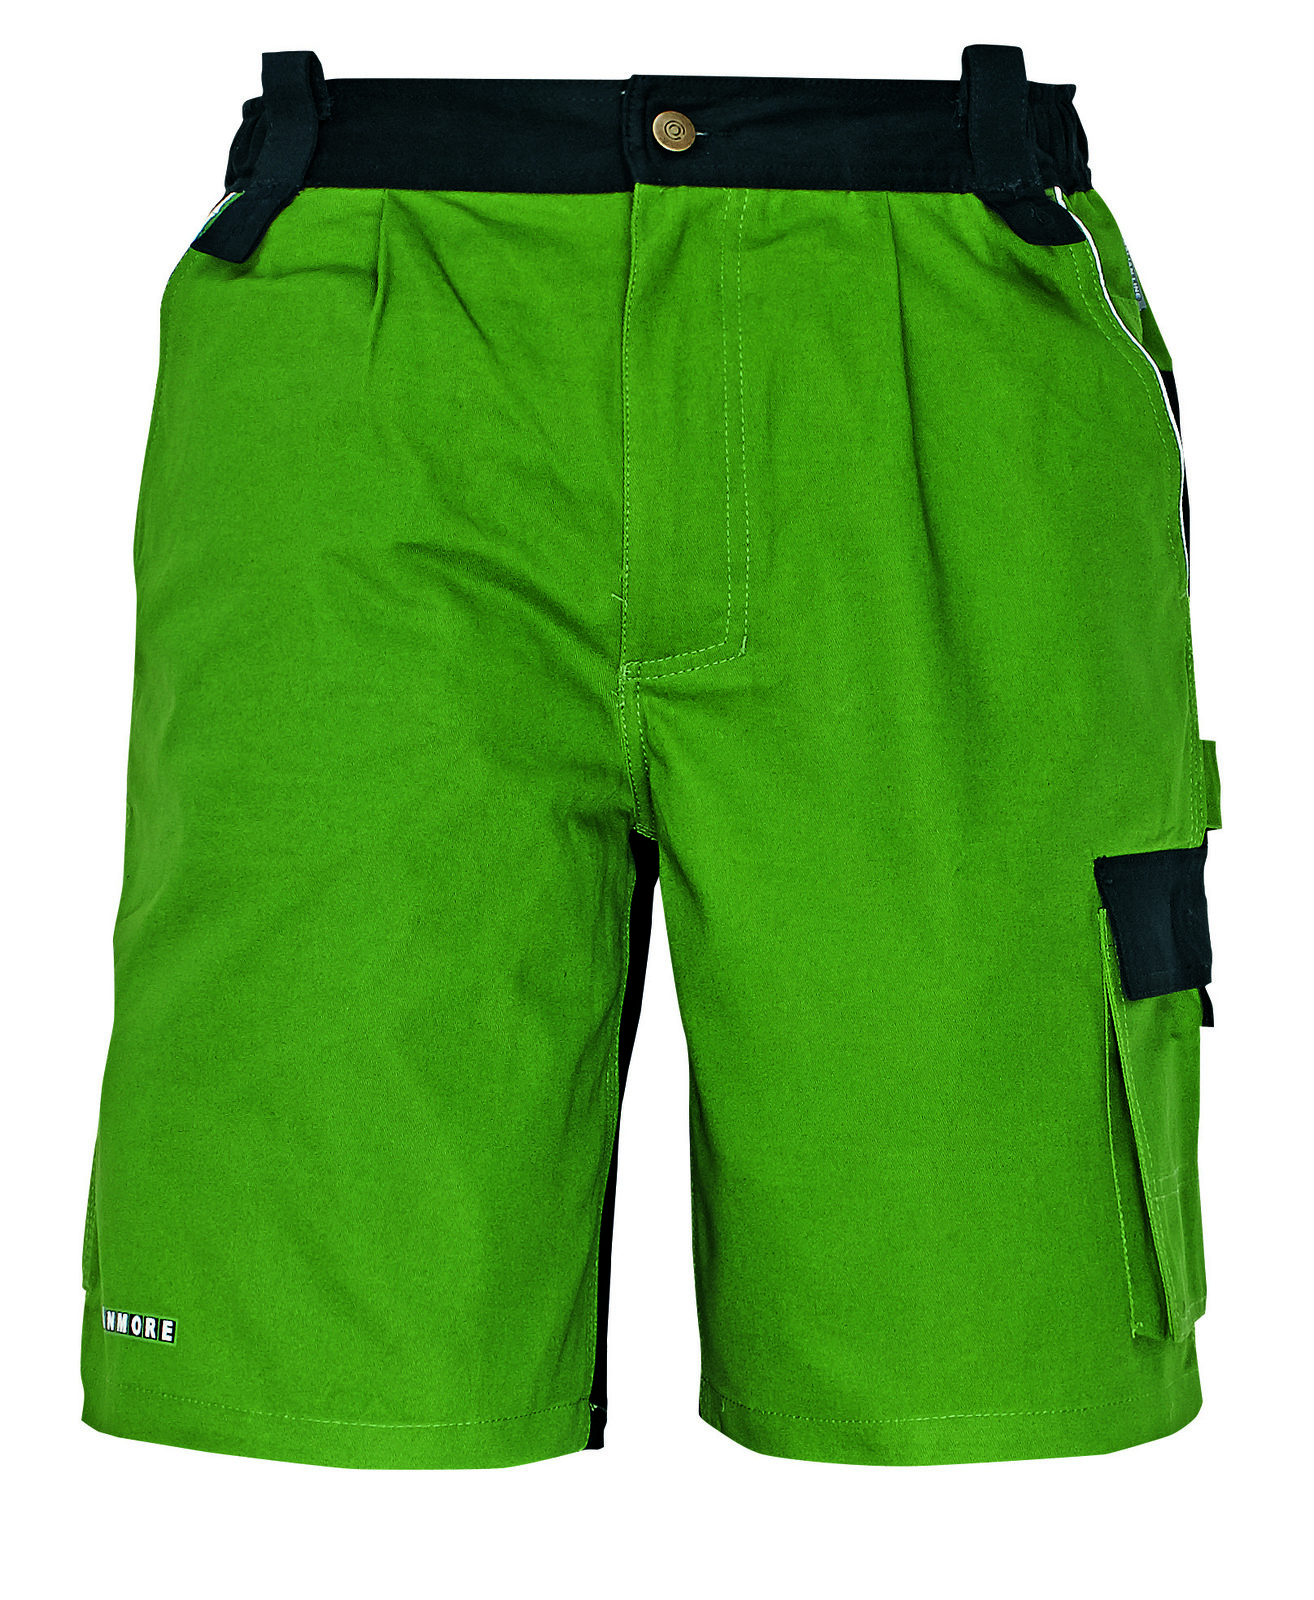 Bavlnené montérkové šortky Stanmore - veľkosť: 54, farba: zelená